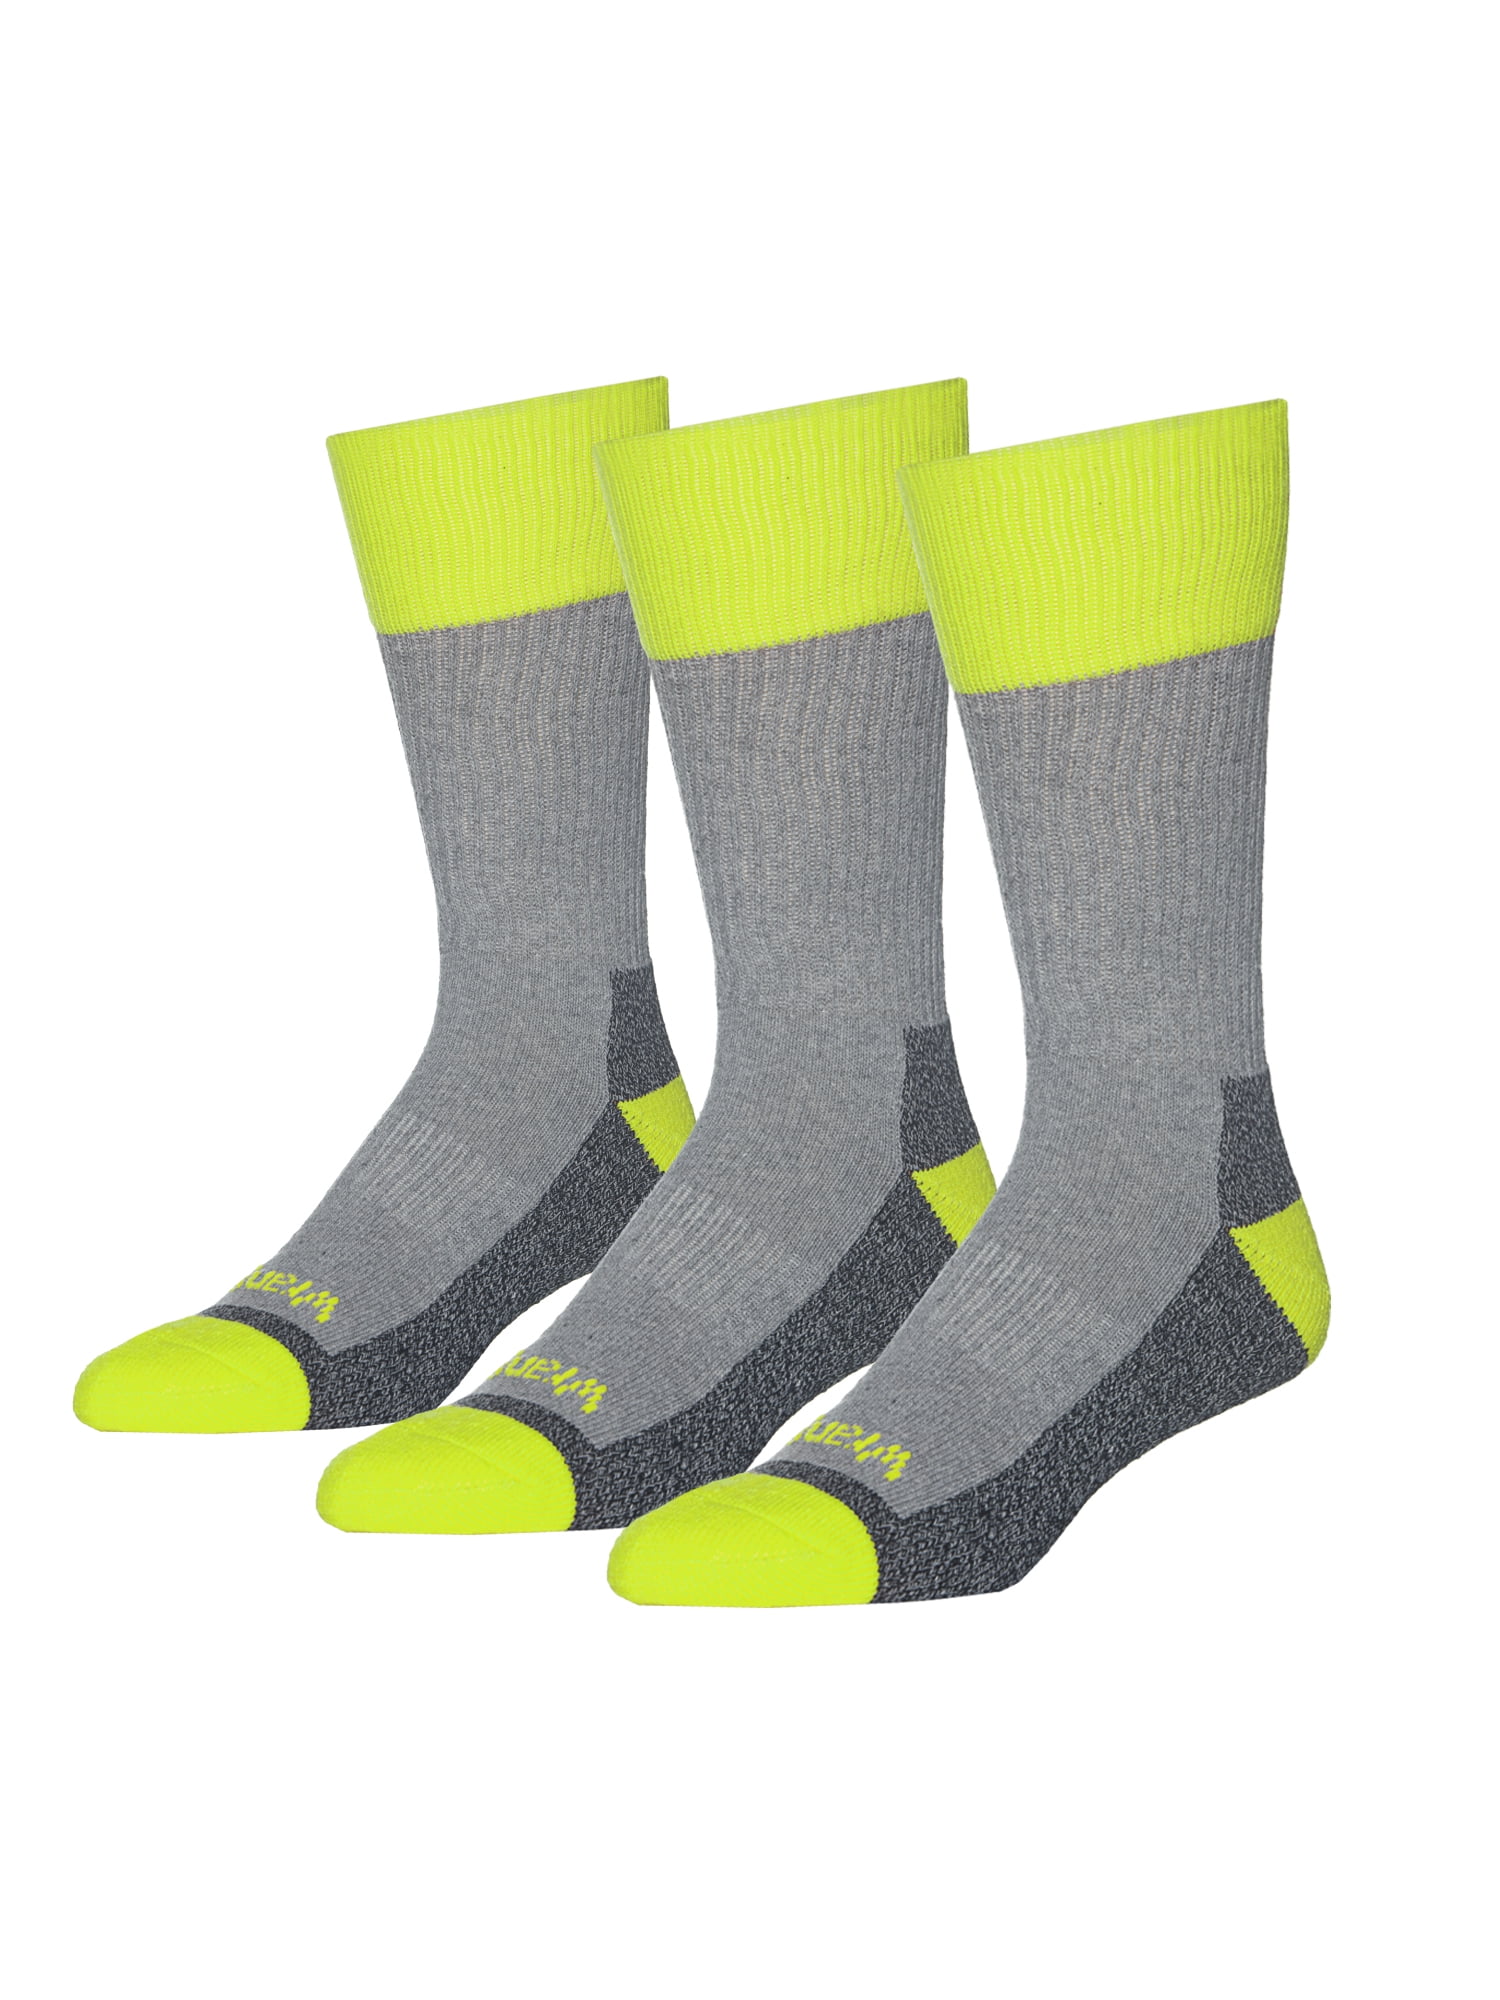 Wrangler Men's Socks - Walmart.com